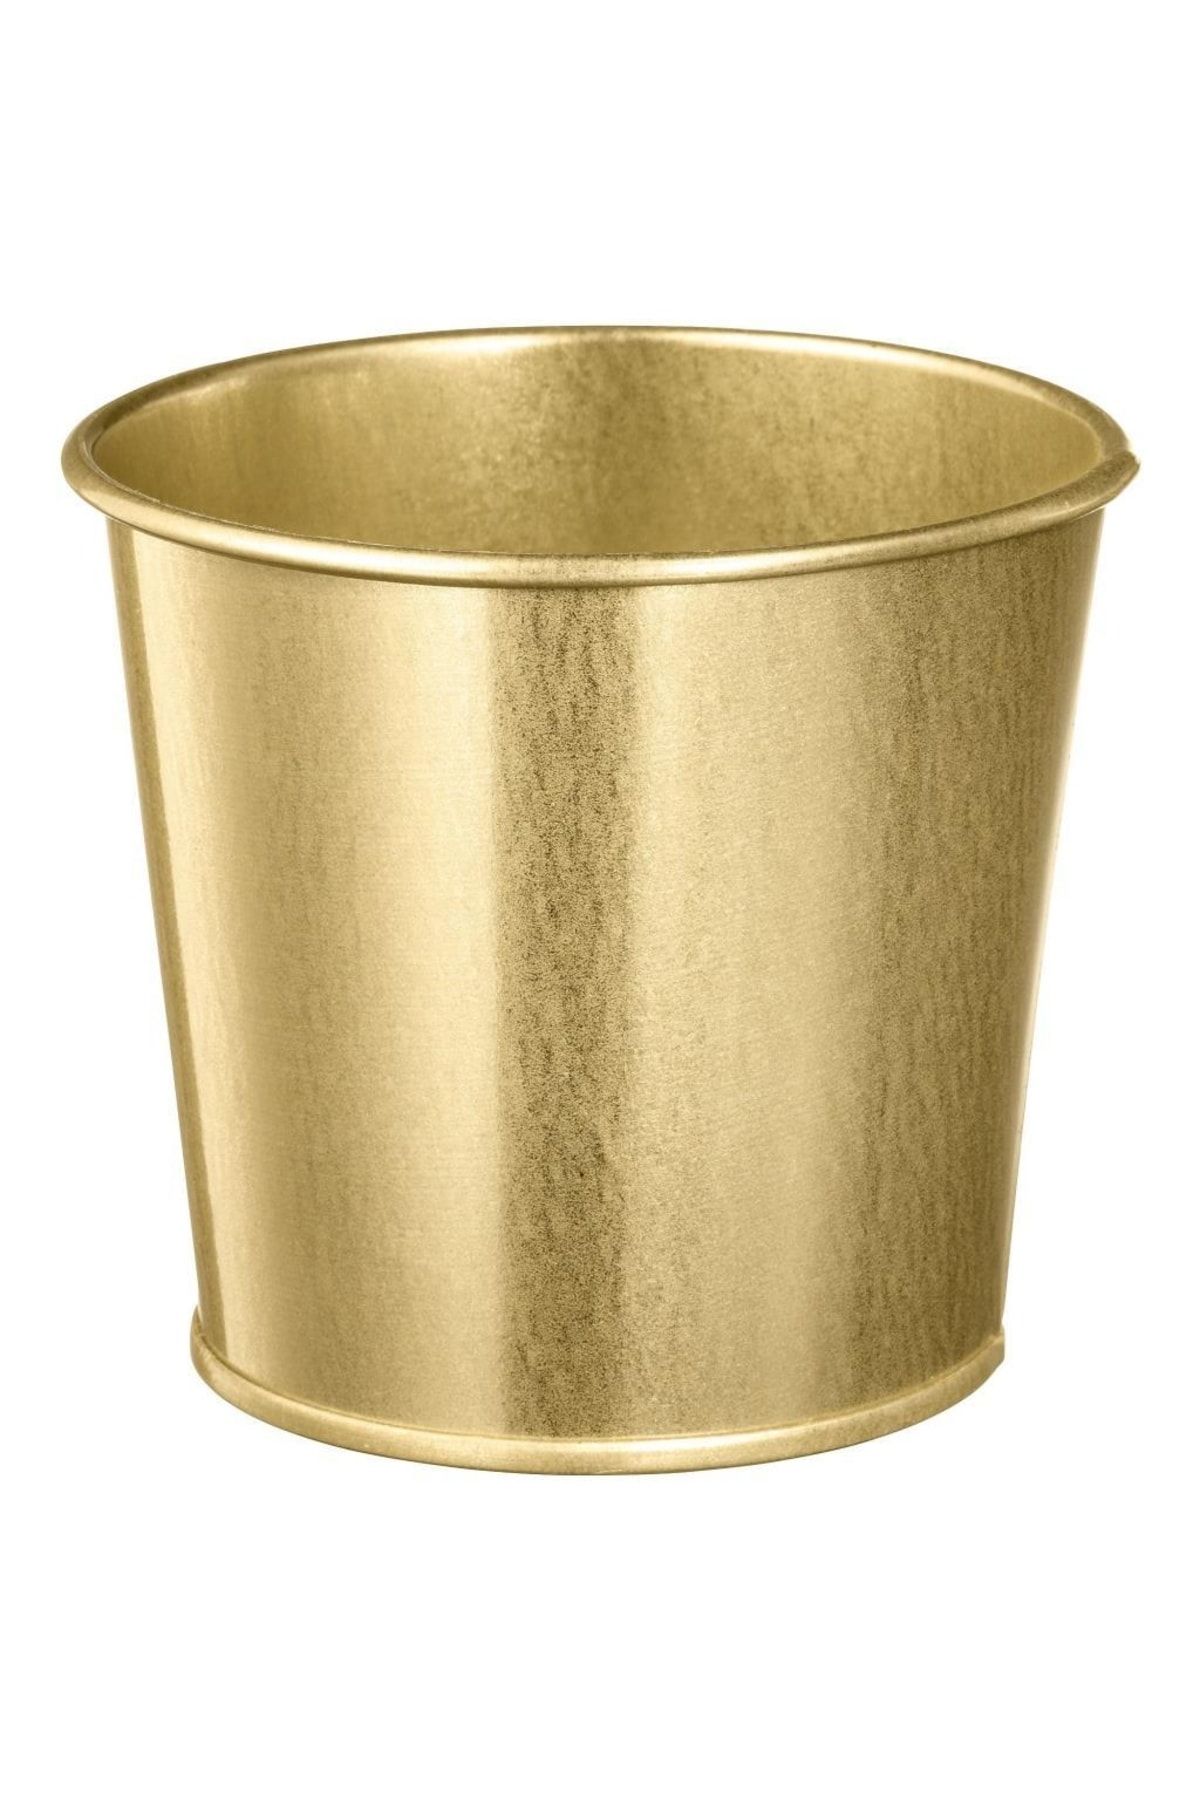 BARBUN Daıdaı Galvanizli Çelik Saksı - Gold Pirinç Rengi - 9 Cm